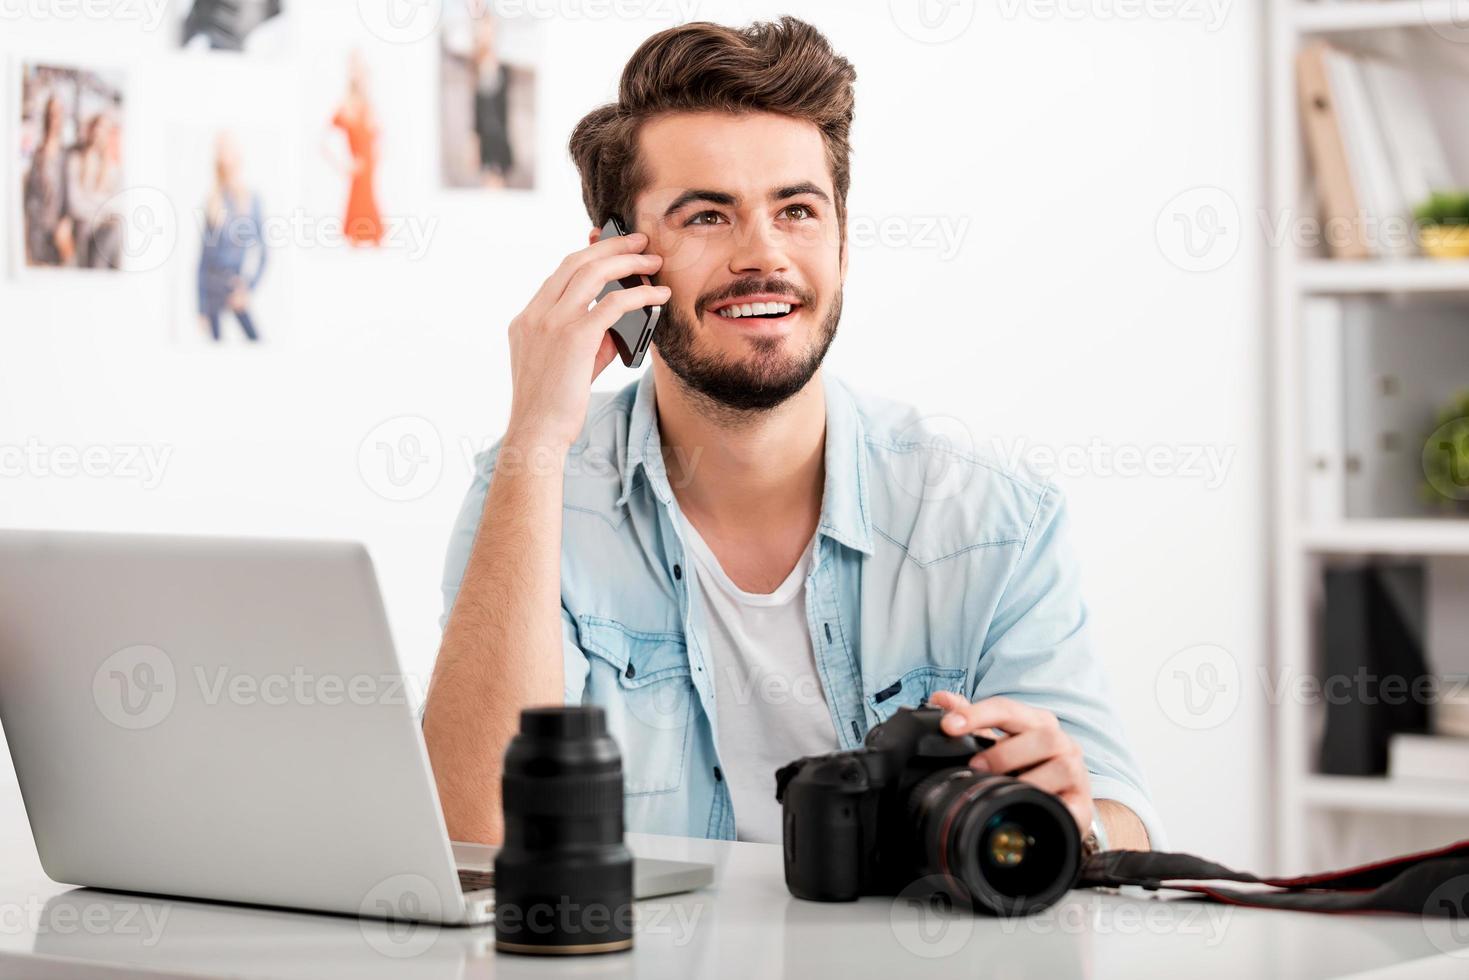 disfrutando del trabajo creativo. joven feliz hablando por teléfono móvil y sonriendo mientras se sienta en su lugar de trabajo y sostiene una cámara digital foto